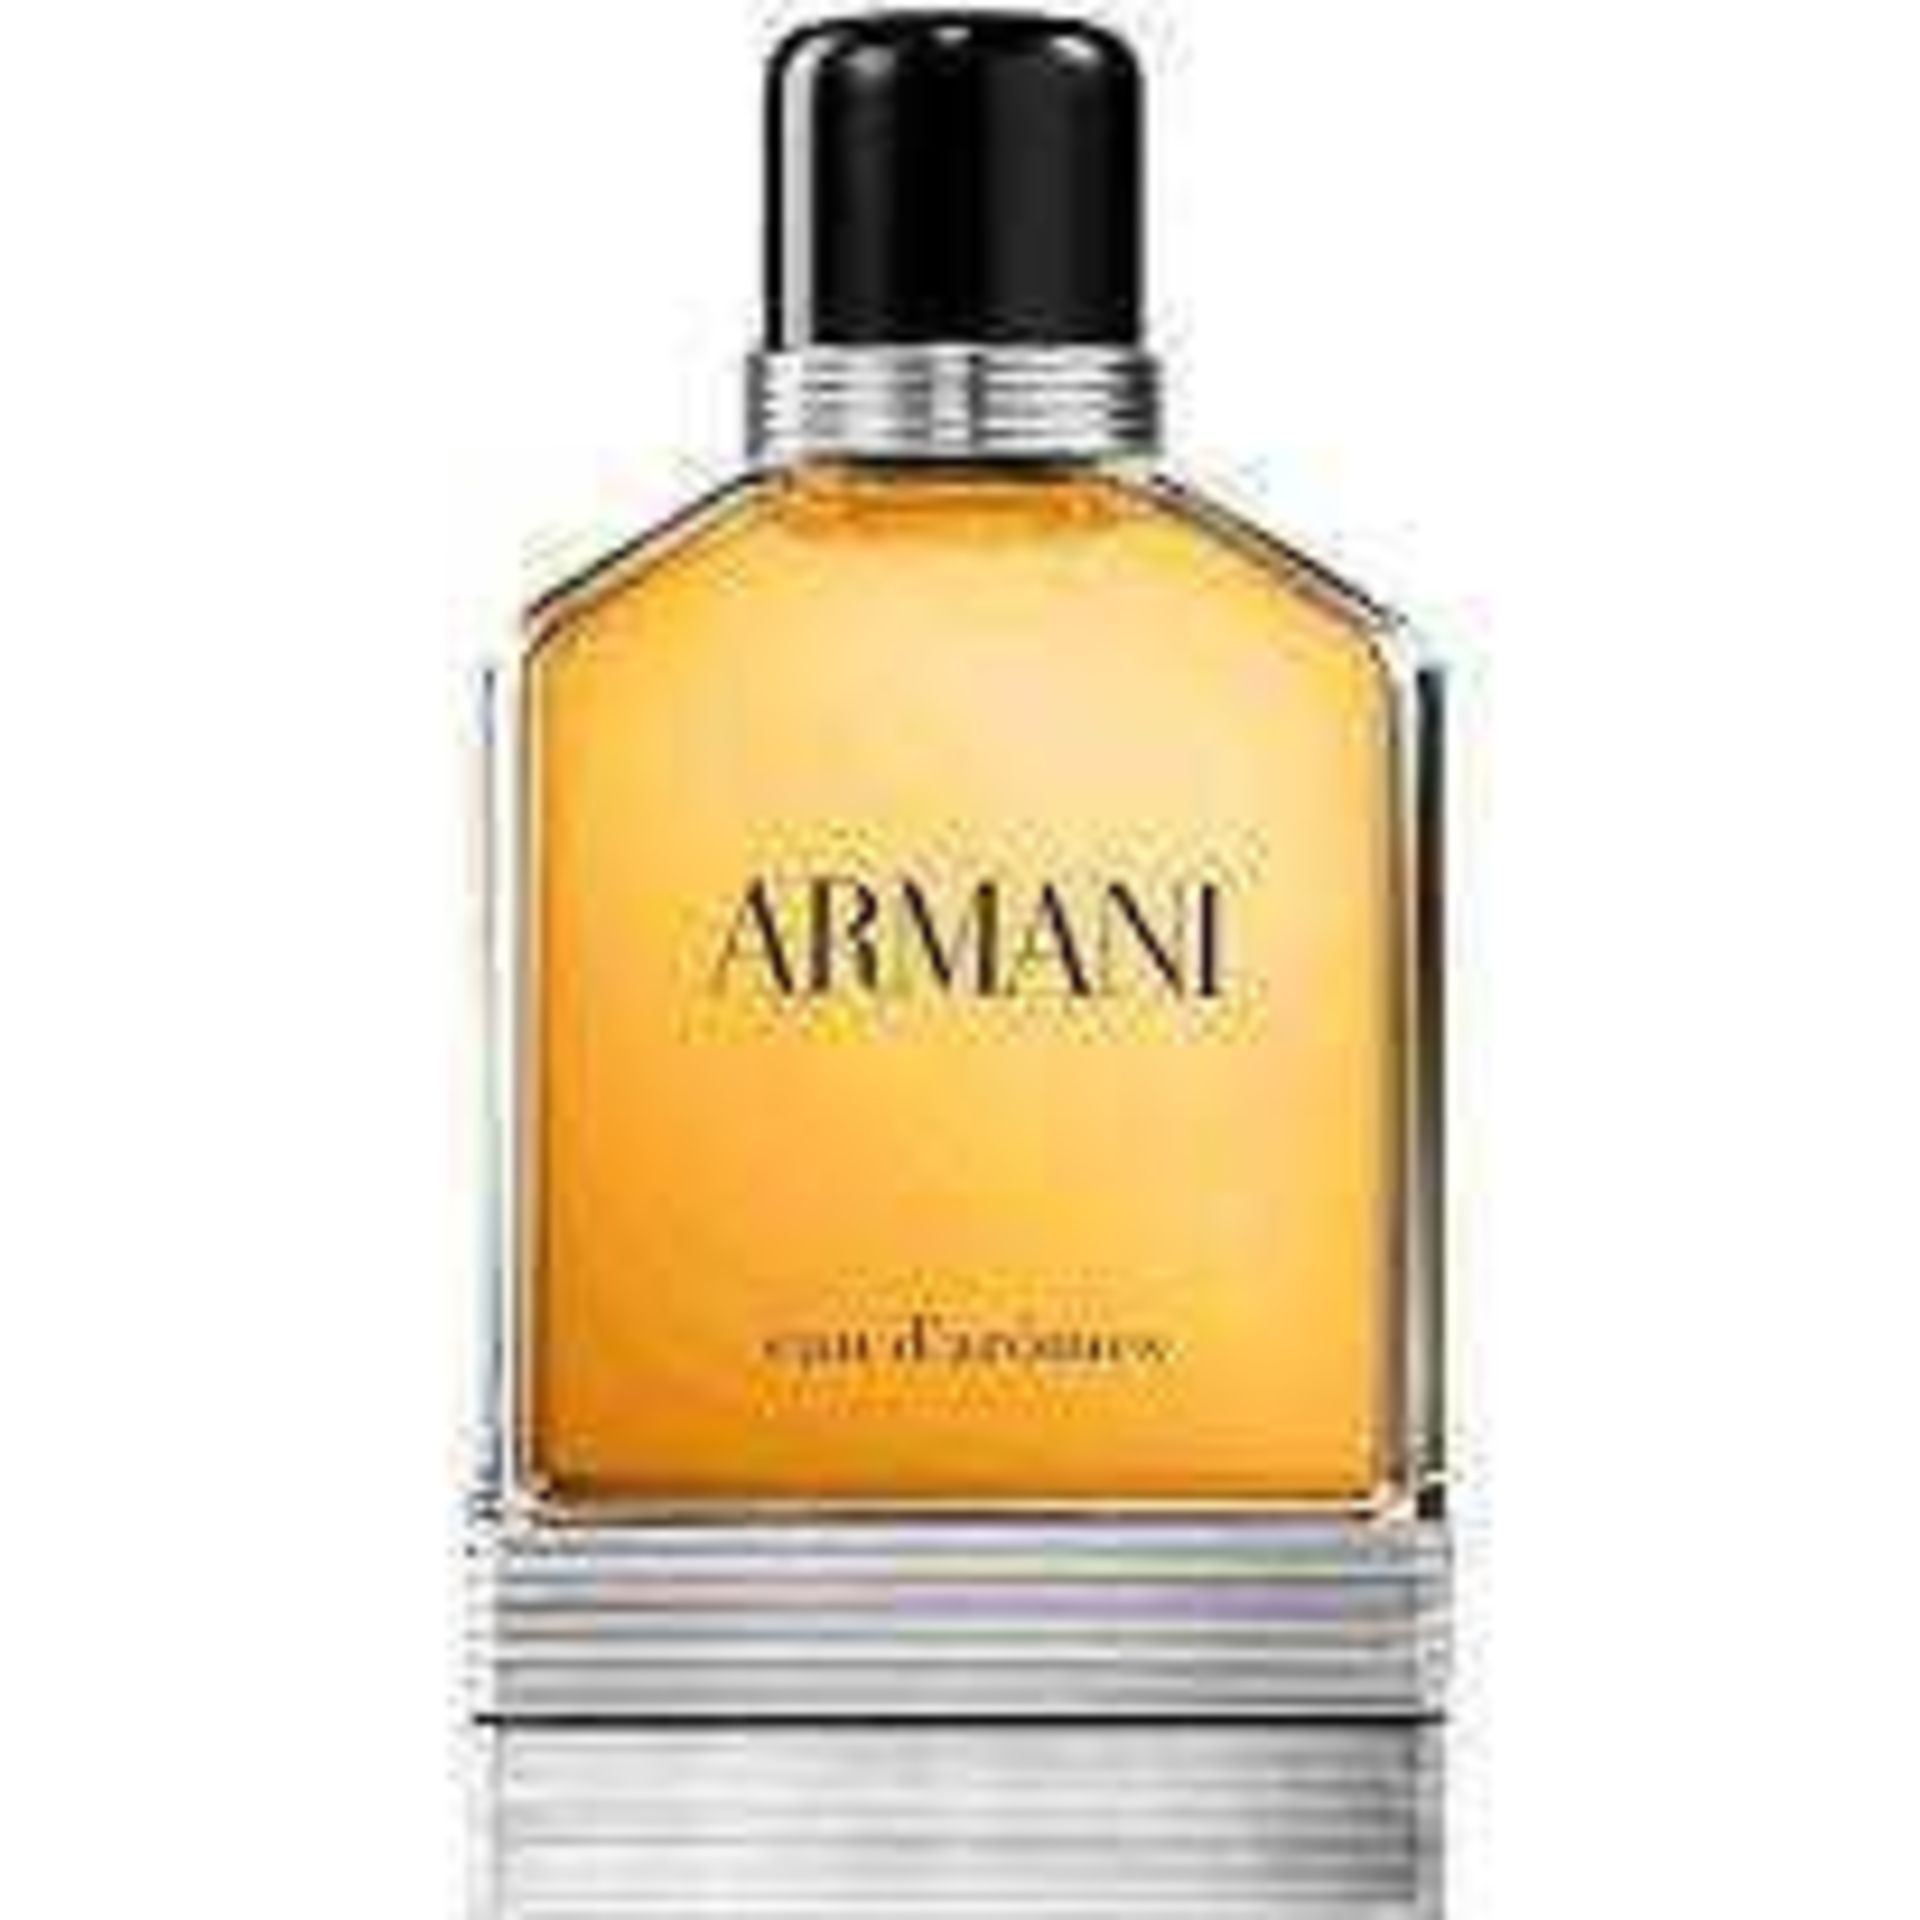 RRP £85 Unboxed Unused Ex-Display Tester Bottle Of Armani Eau D'Aromes Eau De Toilette 100Ml Spray